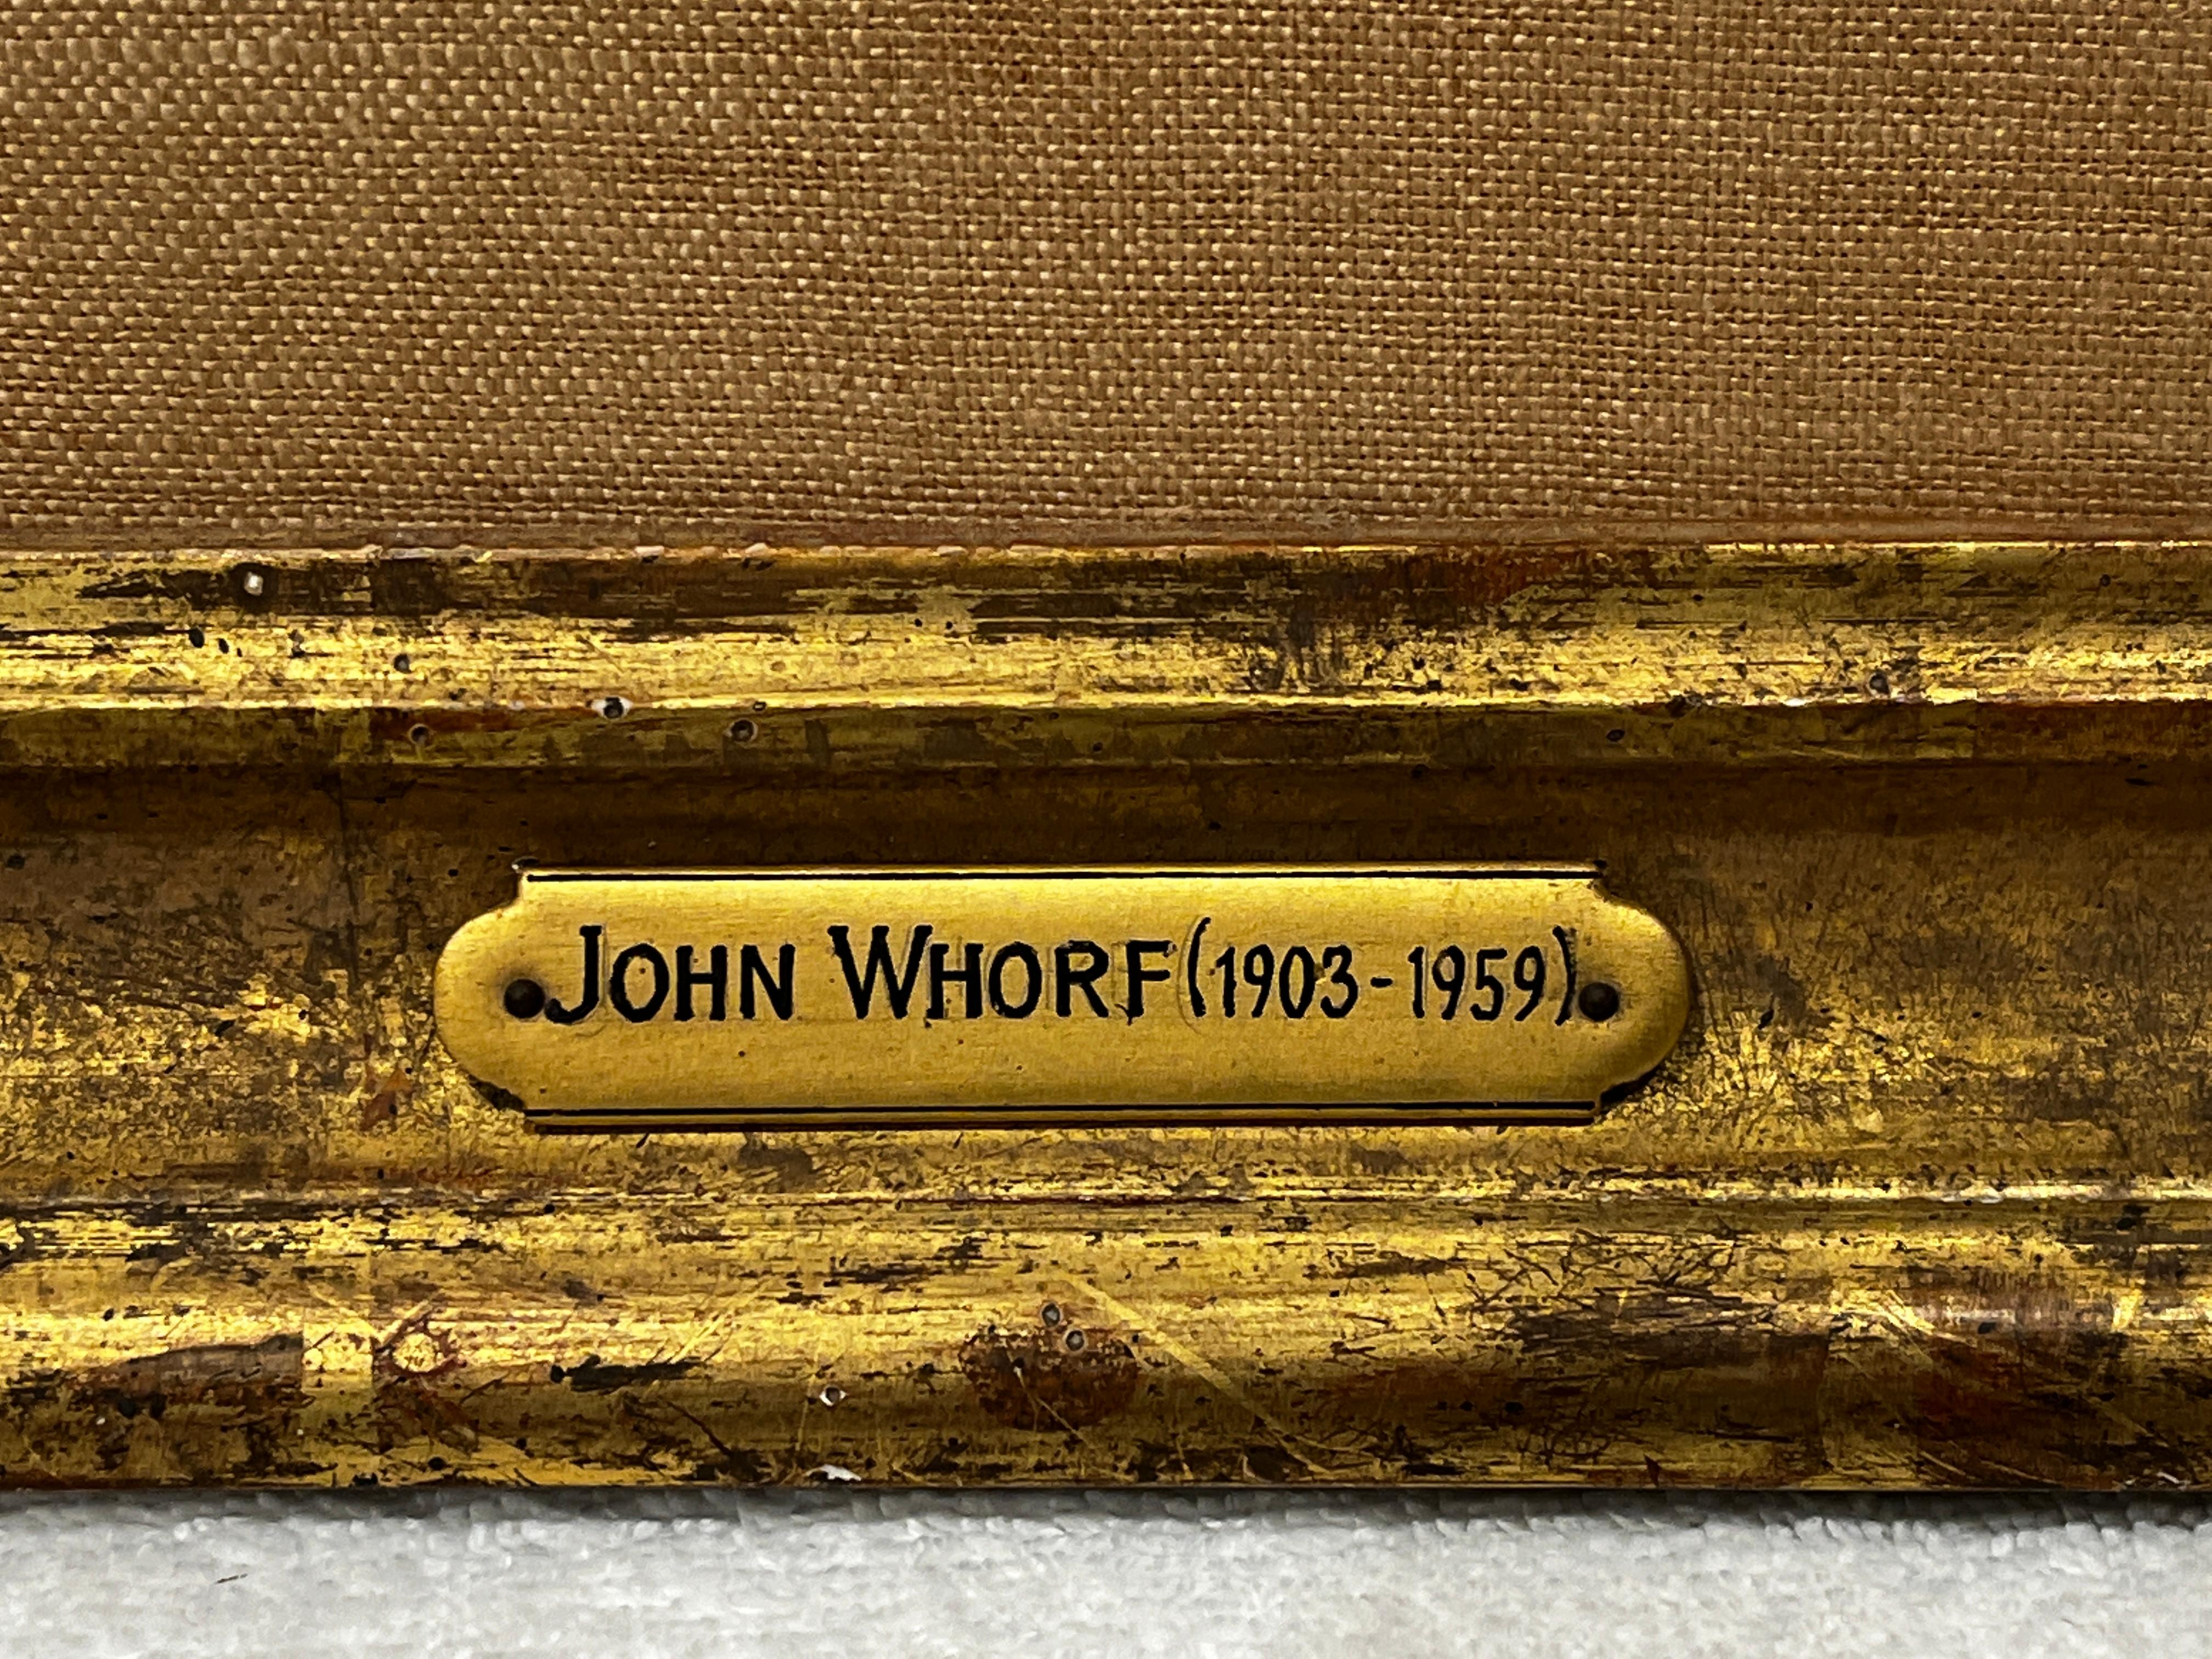 John Whorf, né en 1903, était un artiste talentueux, à l'opinion bien arrêtée, qui a connu un grand succès à un jeune âge. 

Encouragé par son père artiste, Whorf a brièvement étudié pendant son adolescence avant de décider que l'expérimentation